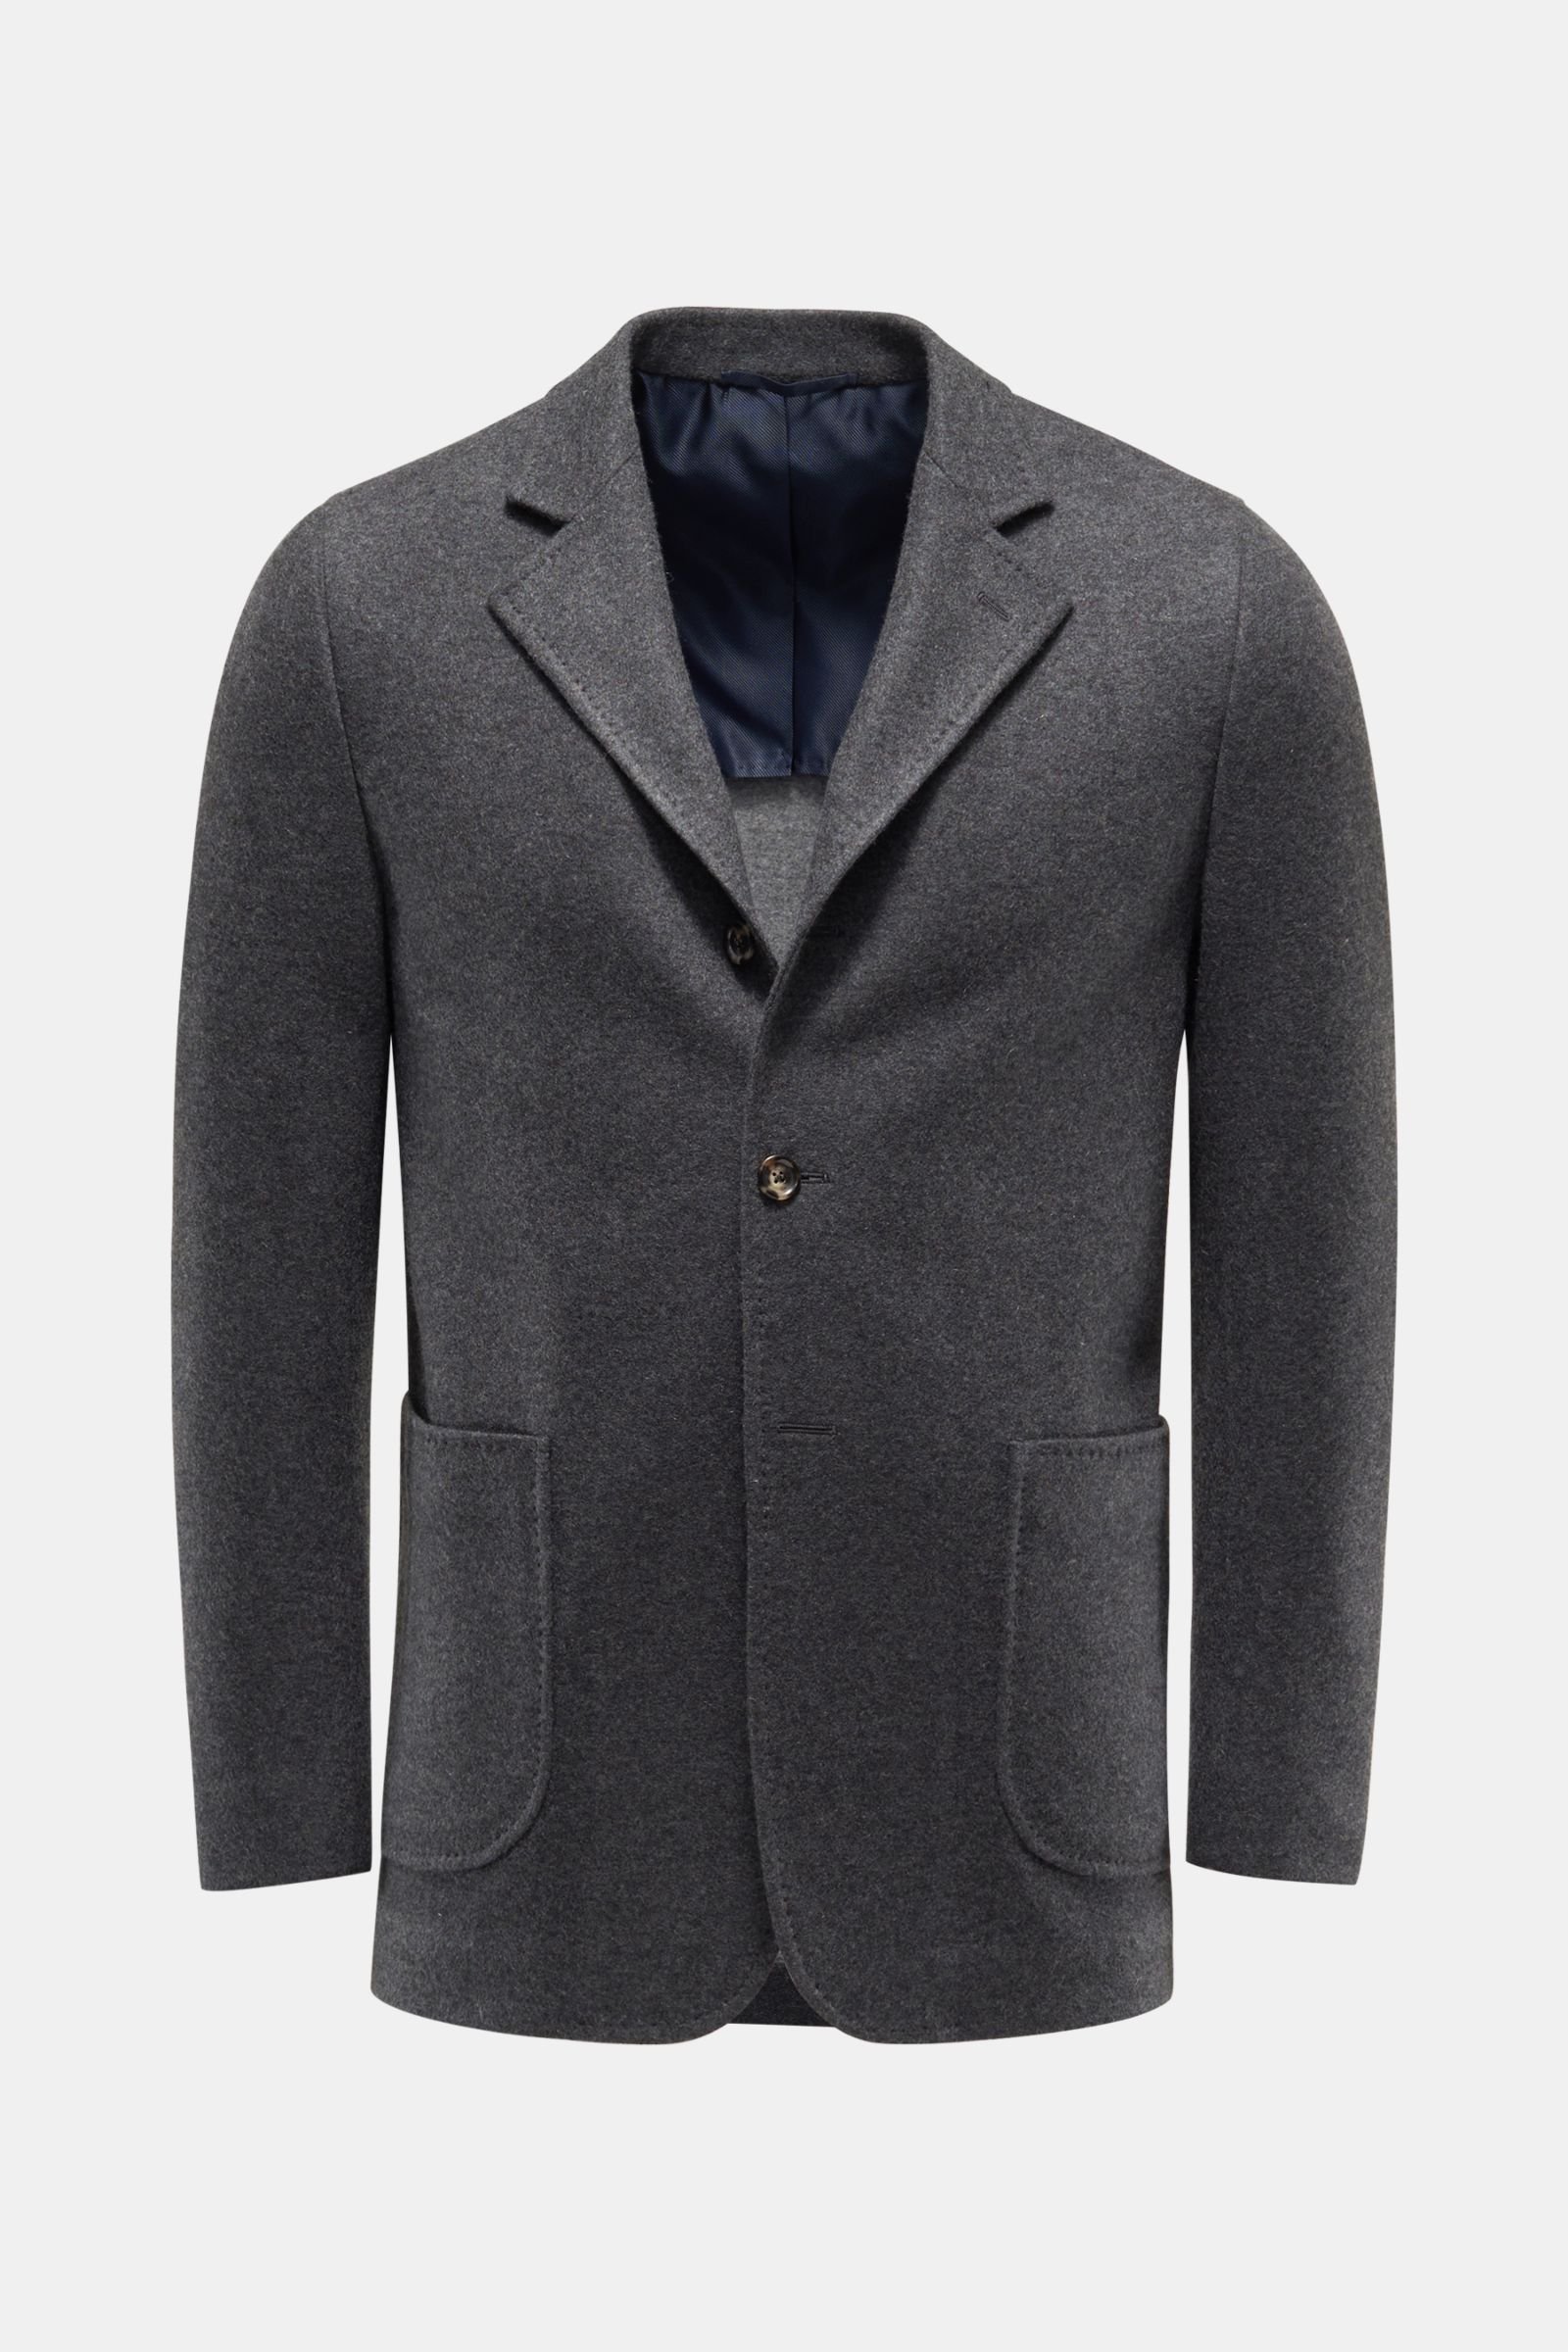 Smart-casual jacket 'Guromolo' dark grey